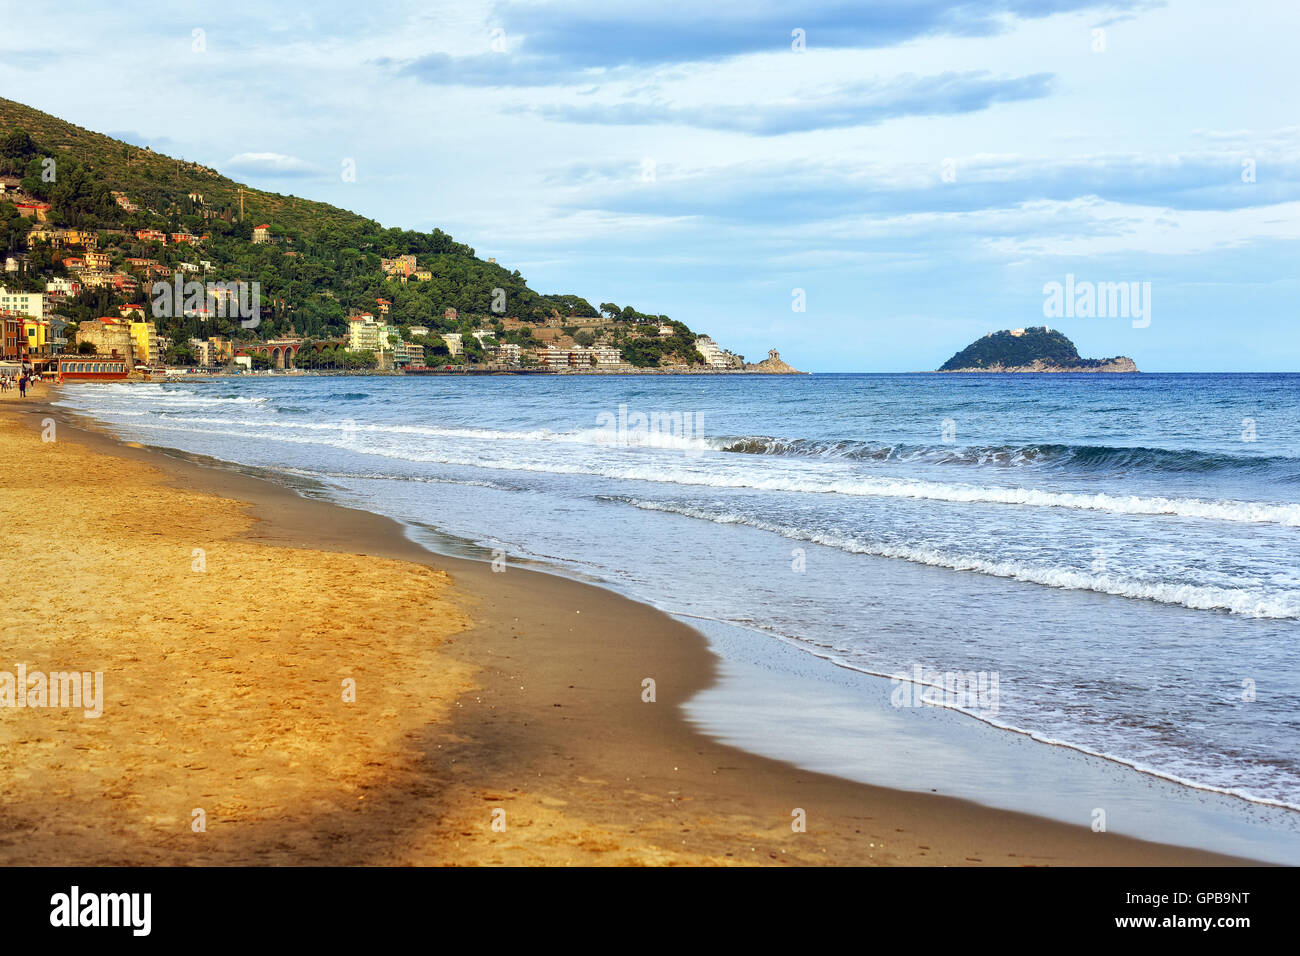 Spiaggia di sabbia sulla costa mediterranea della Riviera italiana da Imperia, Italia Foto Stock